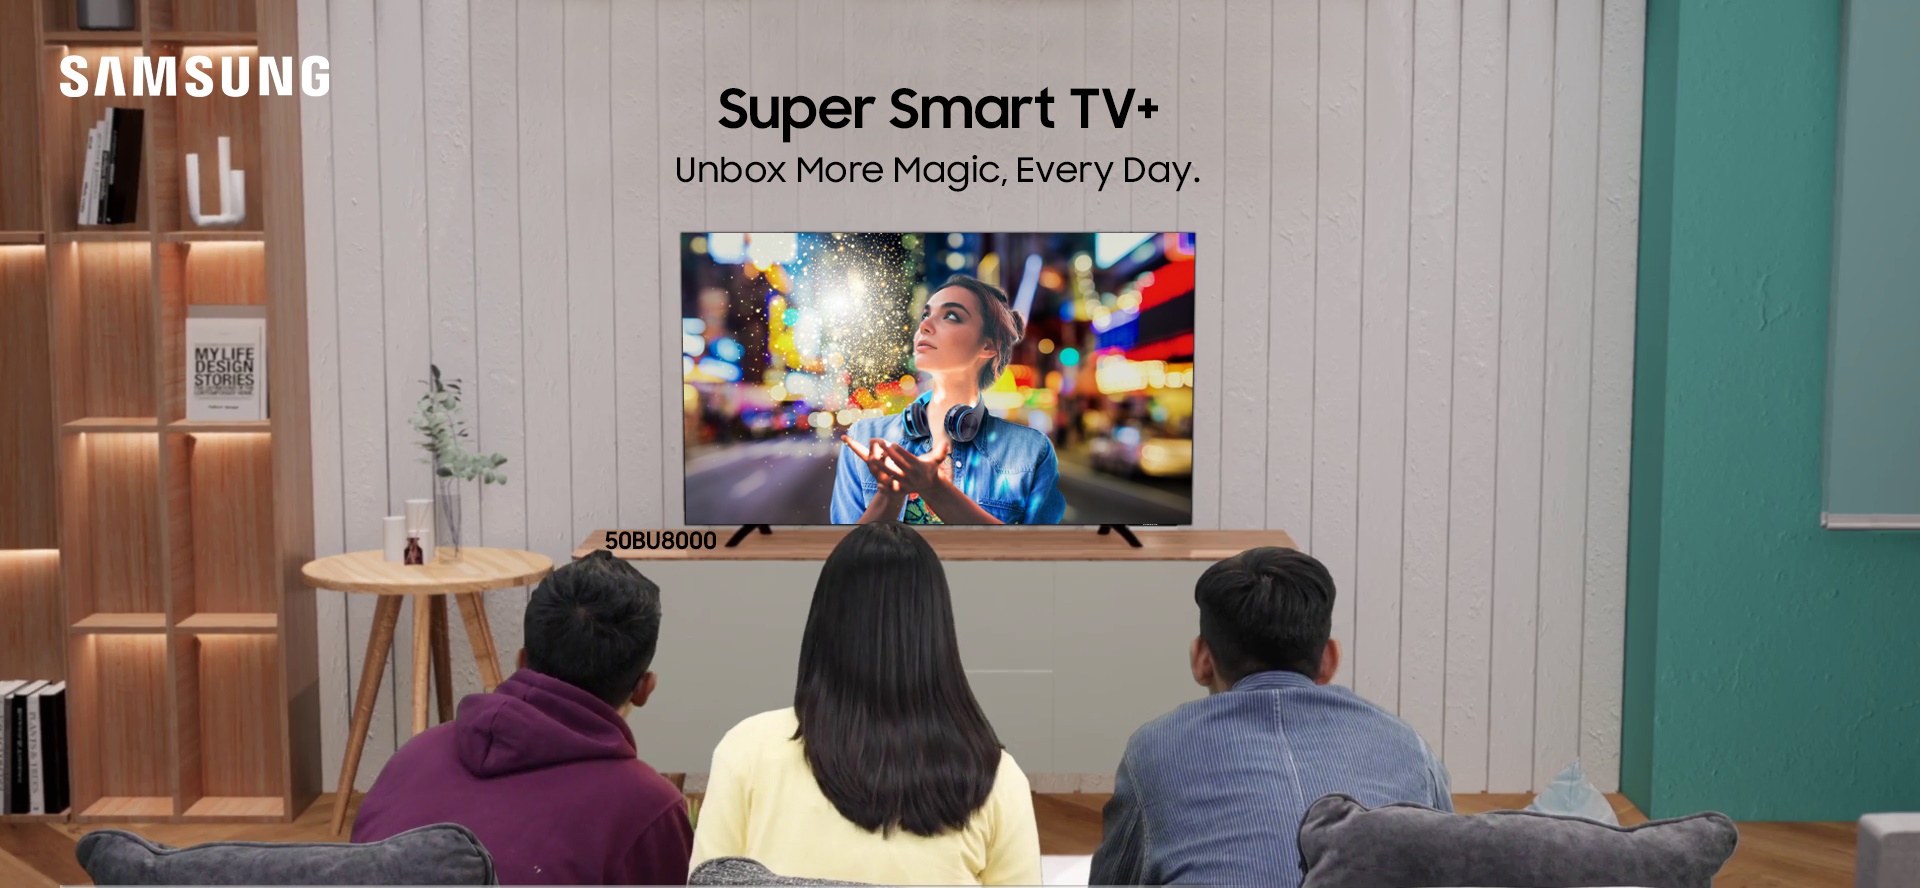 Samsung Luncurkan Super Smart TV+ Murah, Sudah Dukung TV Digital